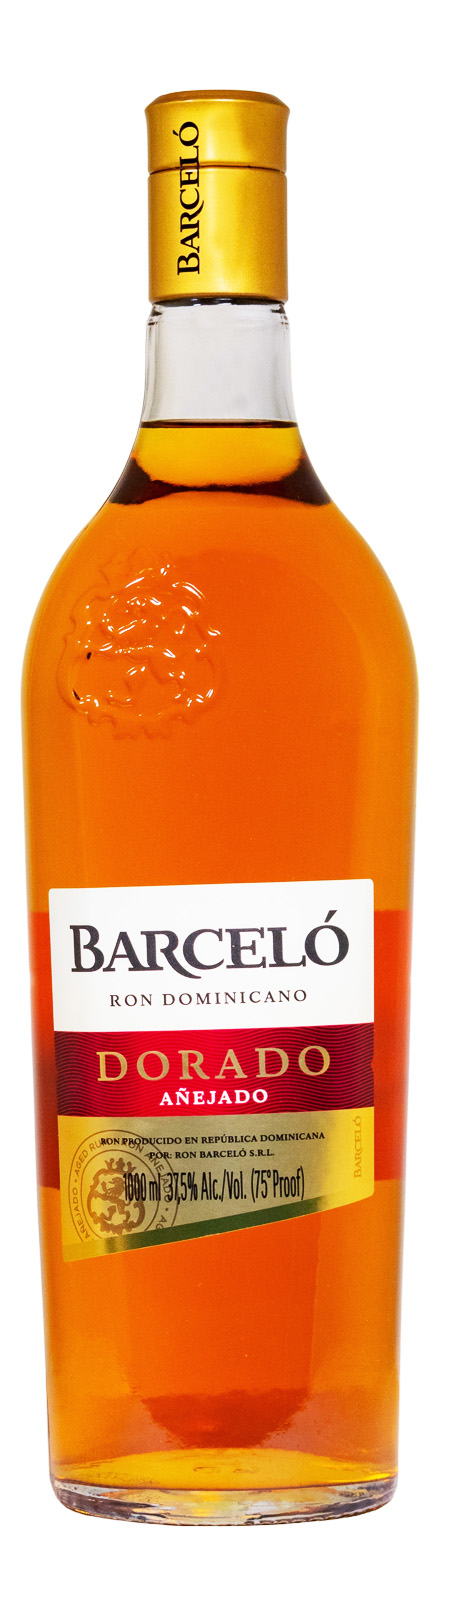 Ron Barcelo Dorado Ron Dominicano Rum - 1 Liter 37,5% vol